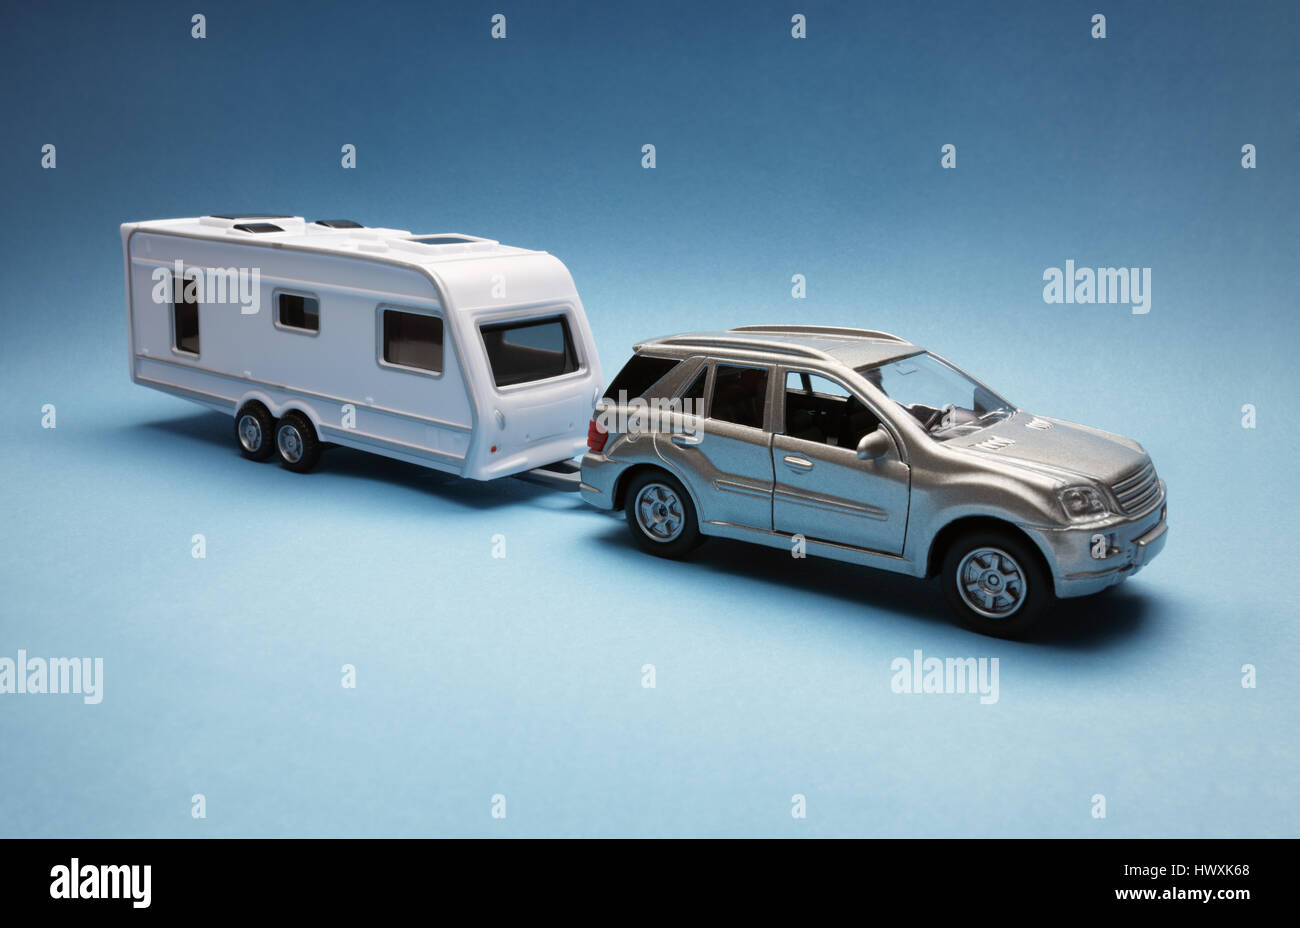 Petite voiture tractant une caravane de conception générique sur fond bleu Banque D'Images